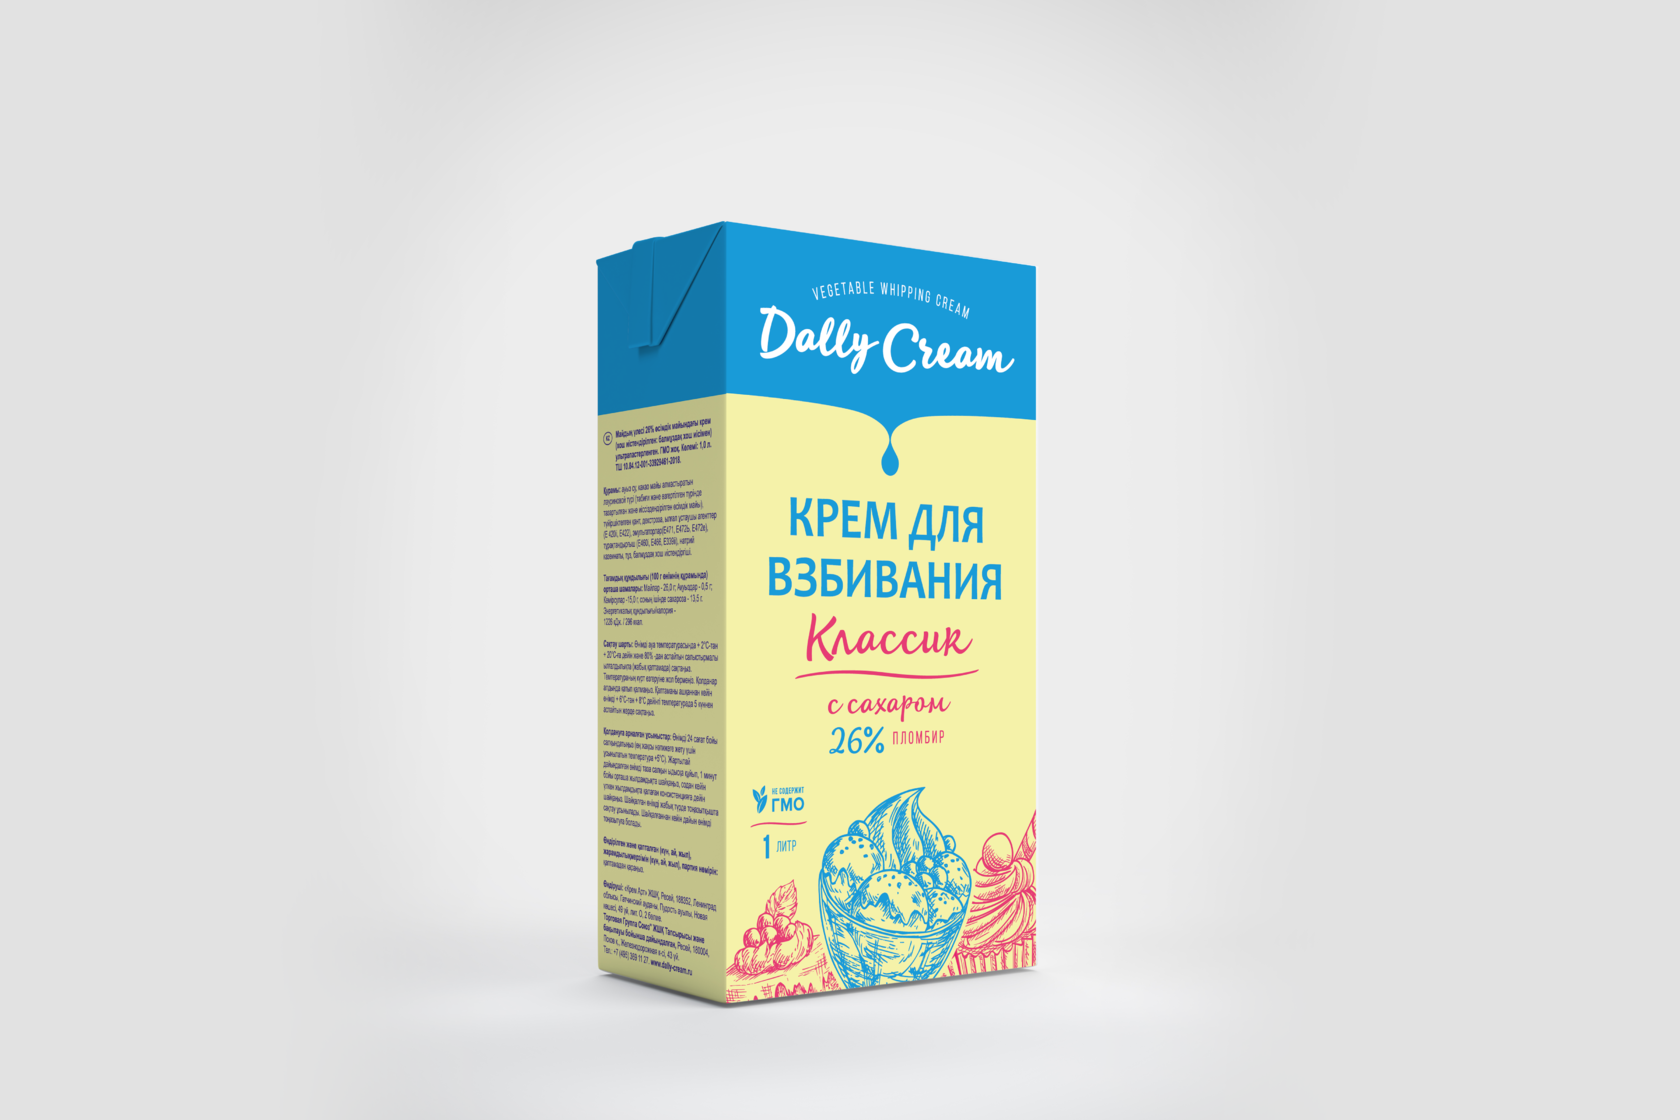 Крем делит цена отзывы. Сливки растительные "Dally Cream" 26% (12 шт х 1 л). Сливки растительные 26% 1 л Дэлли пломбир. Dally Cream крем для взбивания. Крем для взбивания на растительных маслах.